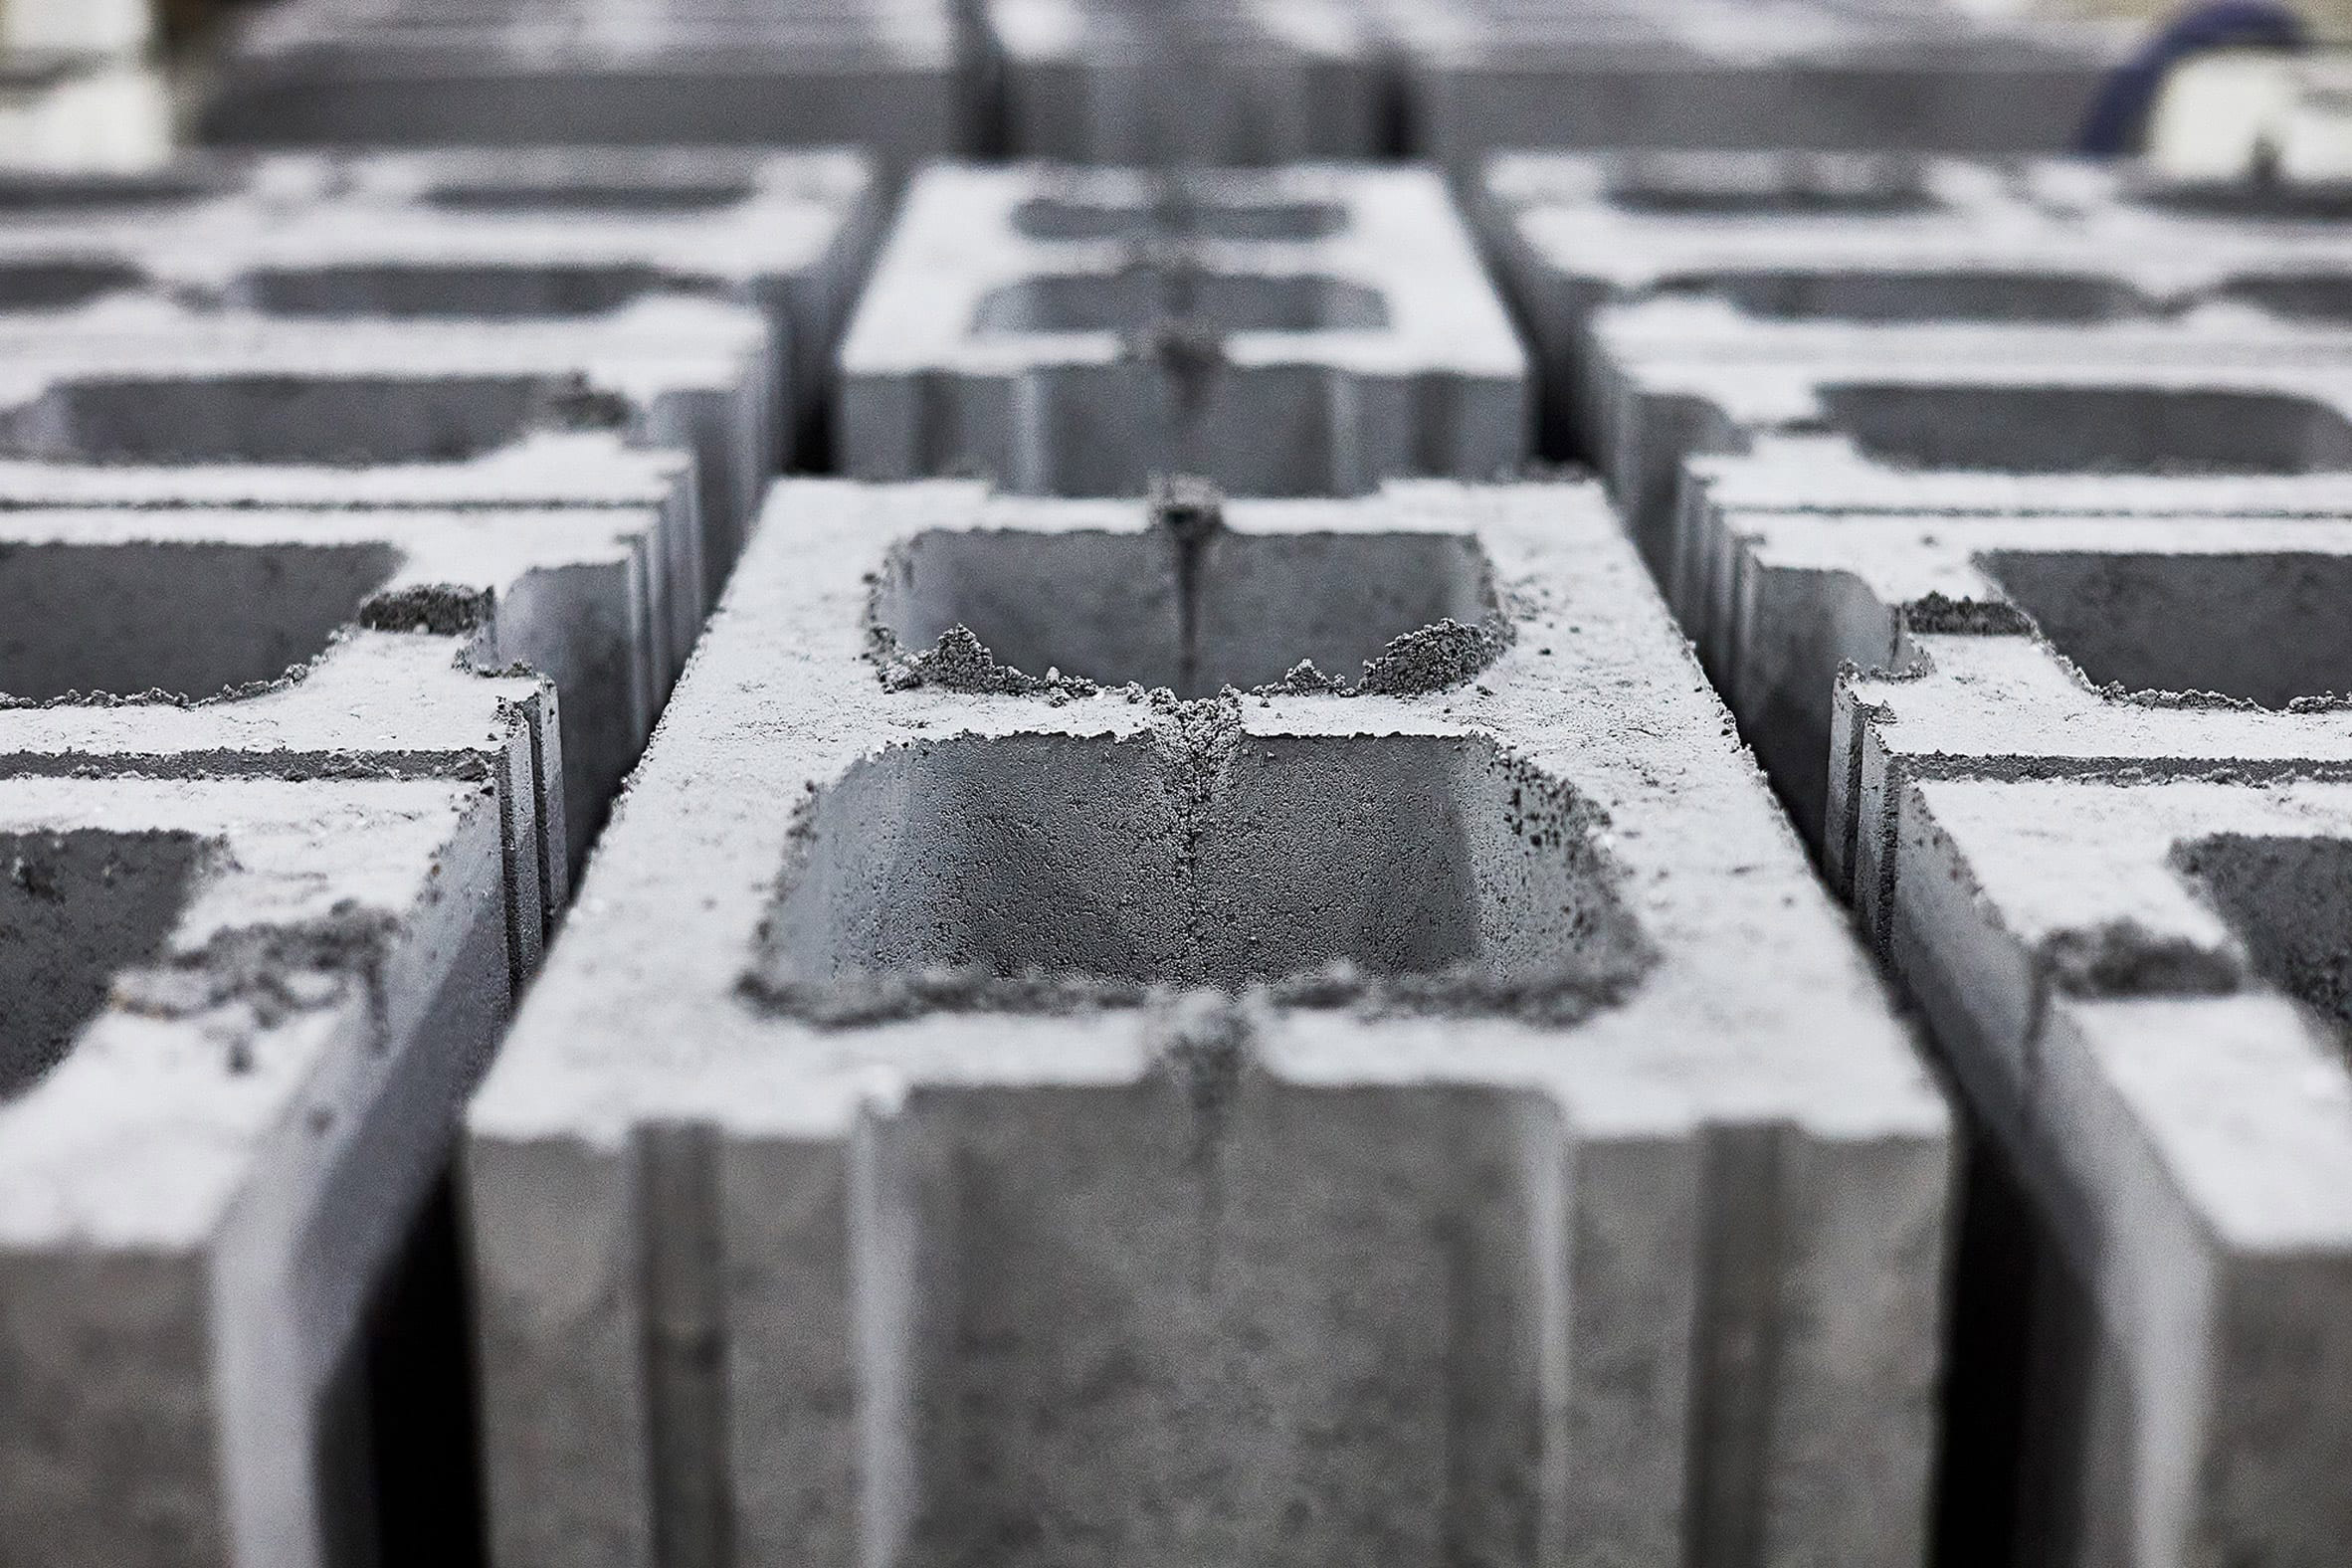 Carbon storing concrete bricks